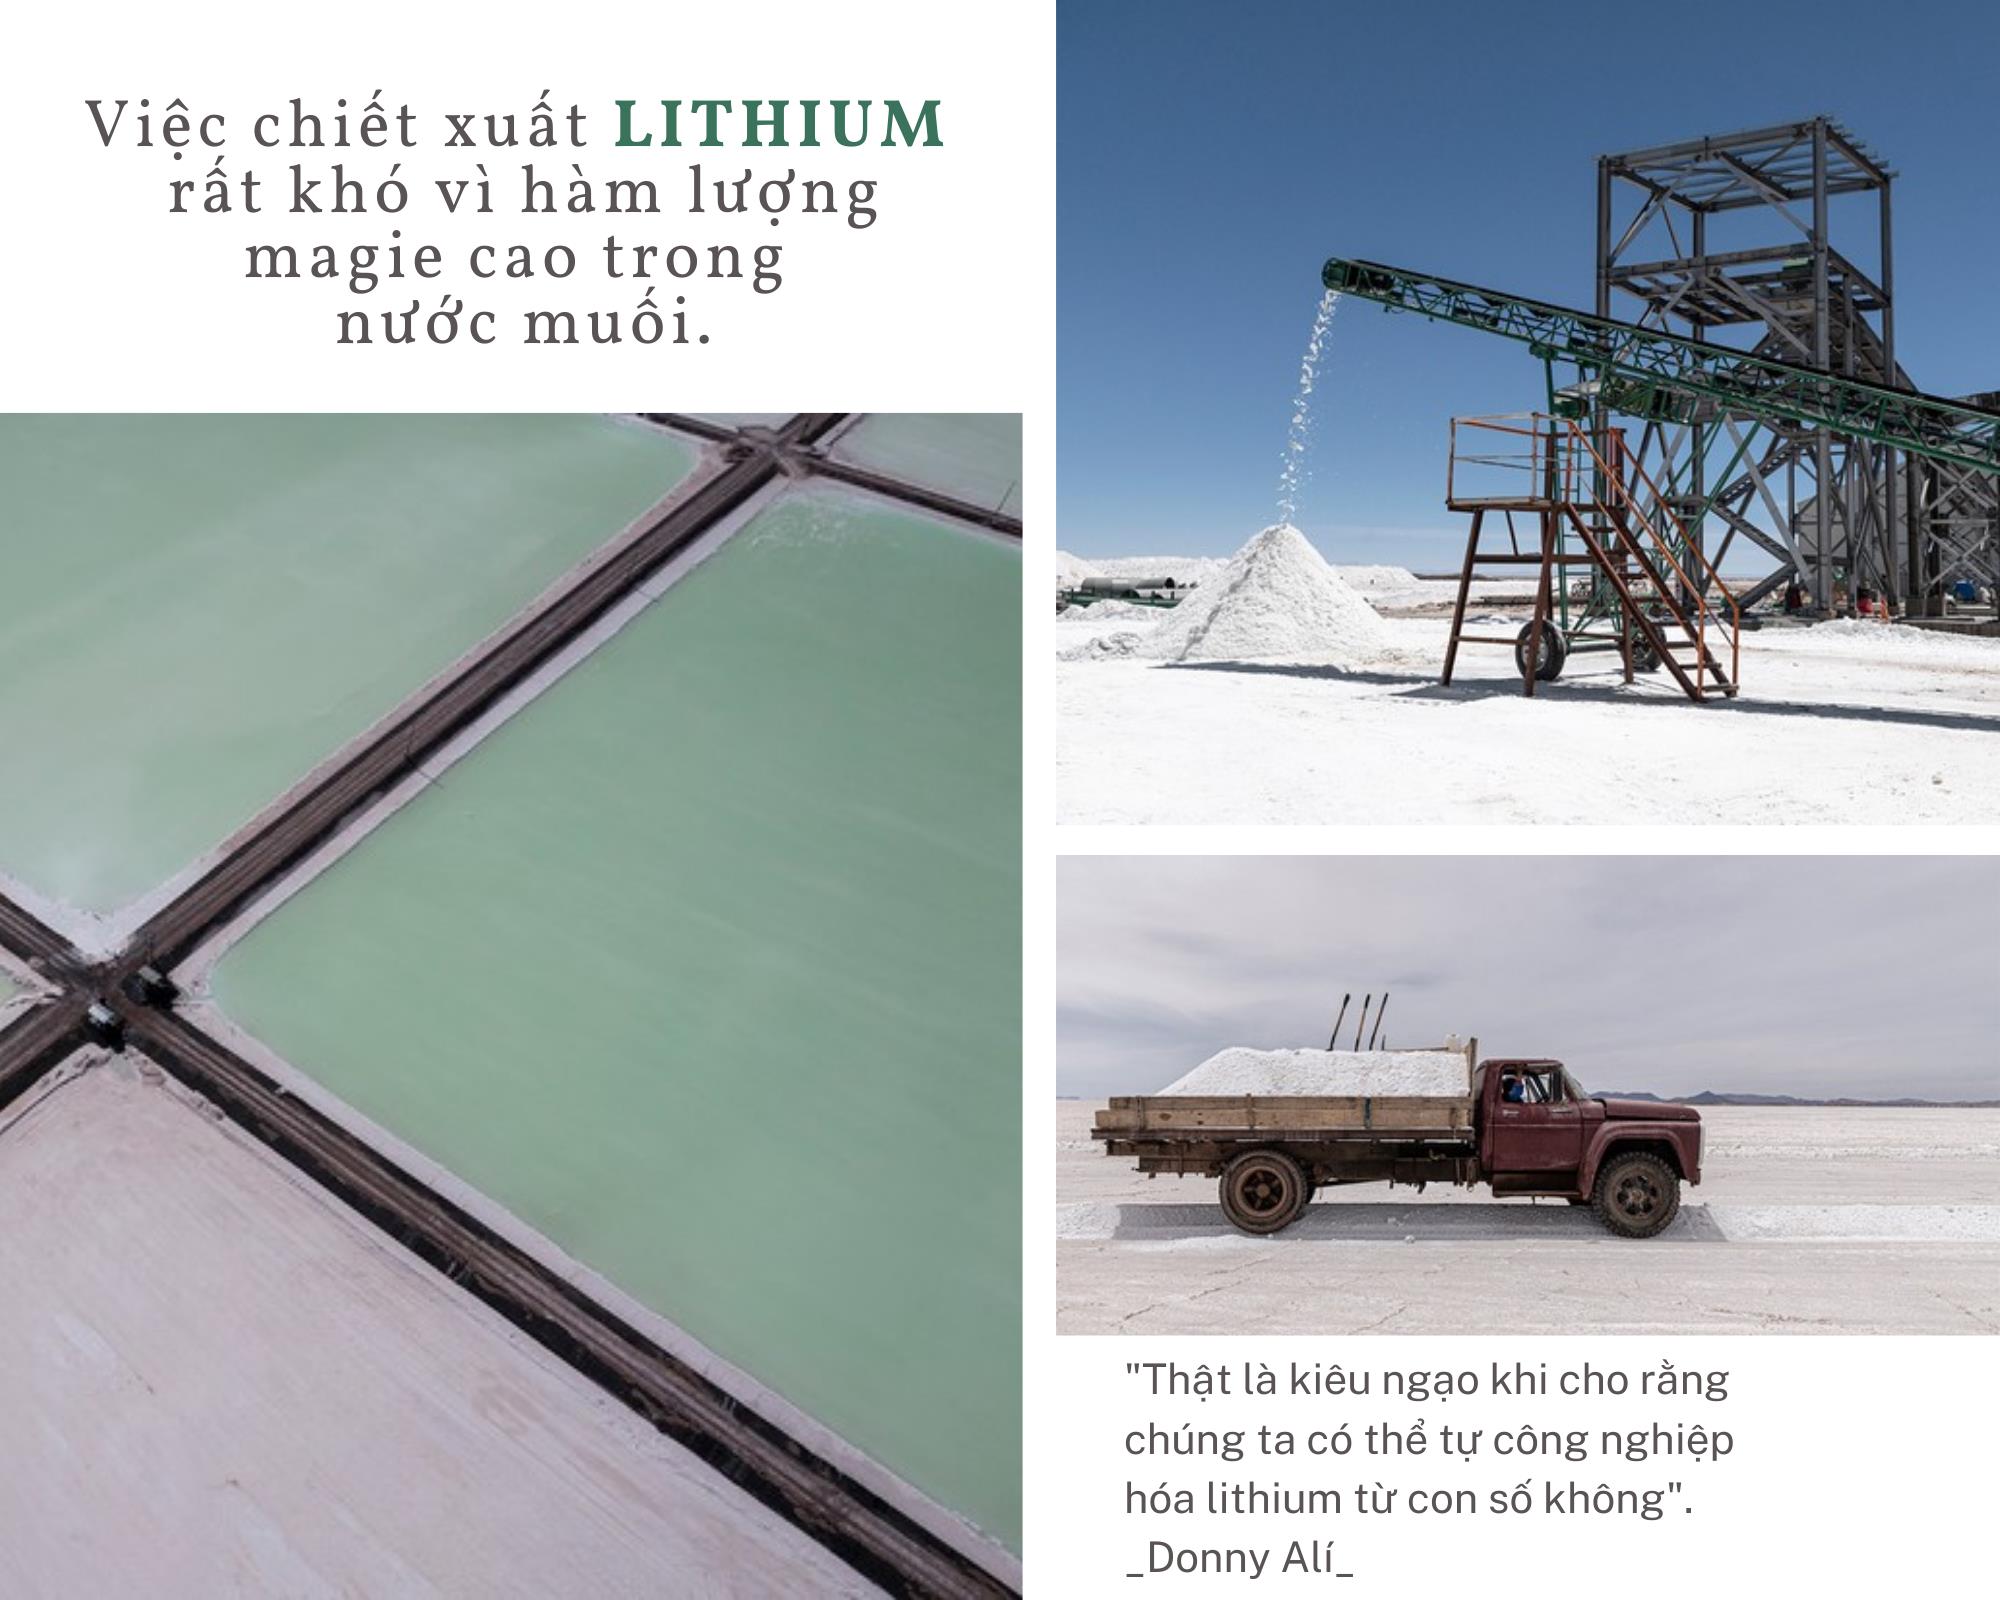 Tai hoạ mang tên lithium: Chuyện về vùng đất sở hữu mỏ “vàng trắng” lớn nhất thế giới nhưng nghèo xác xơ - Ảnh 4.